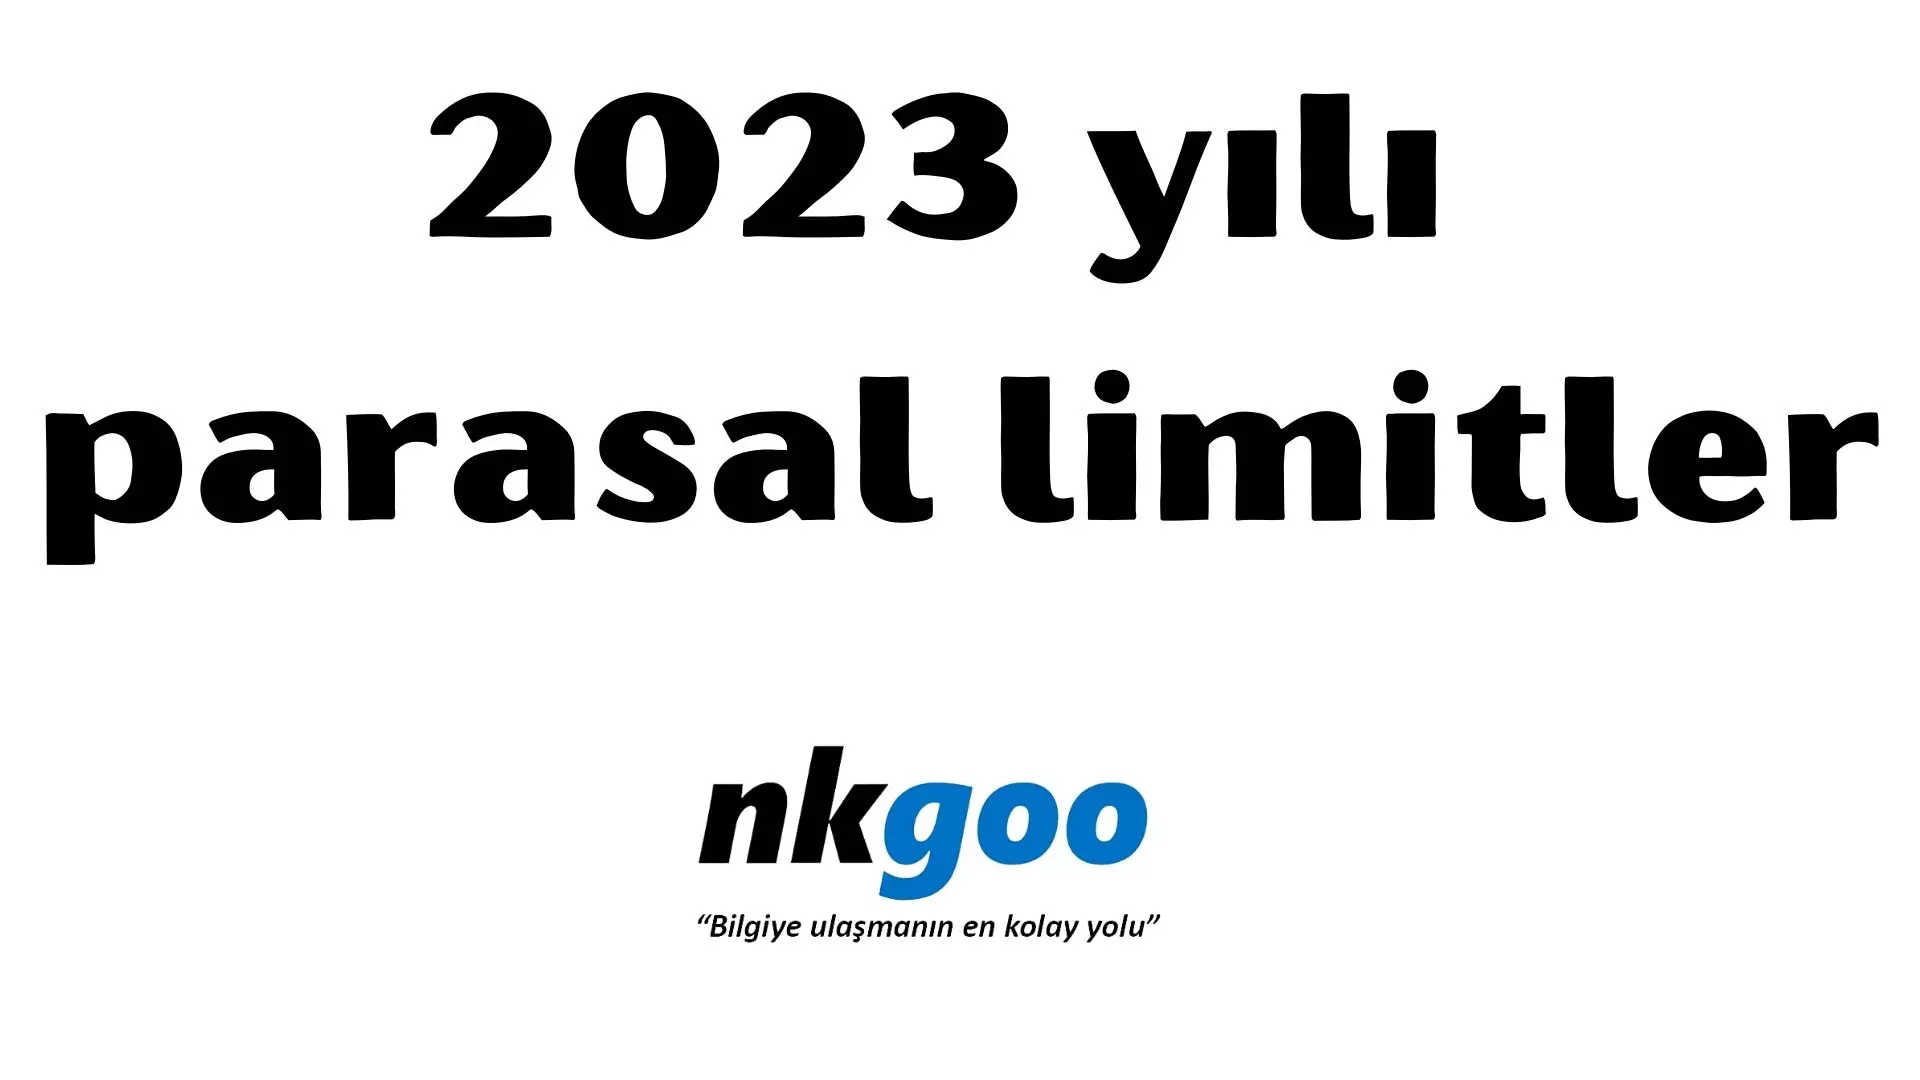 Parasal limitler 2023 yılı 